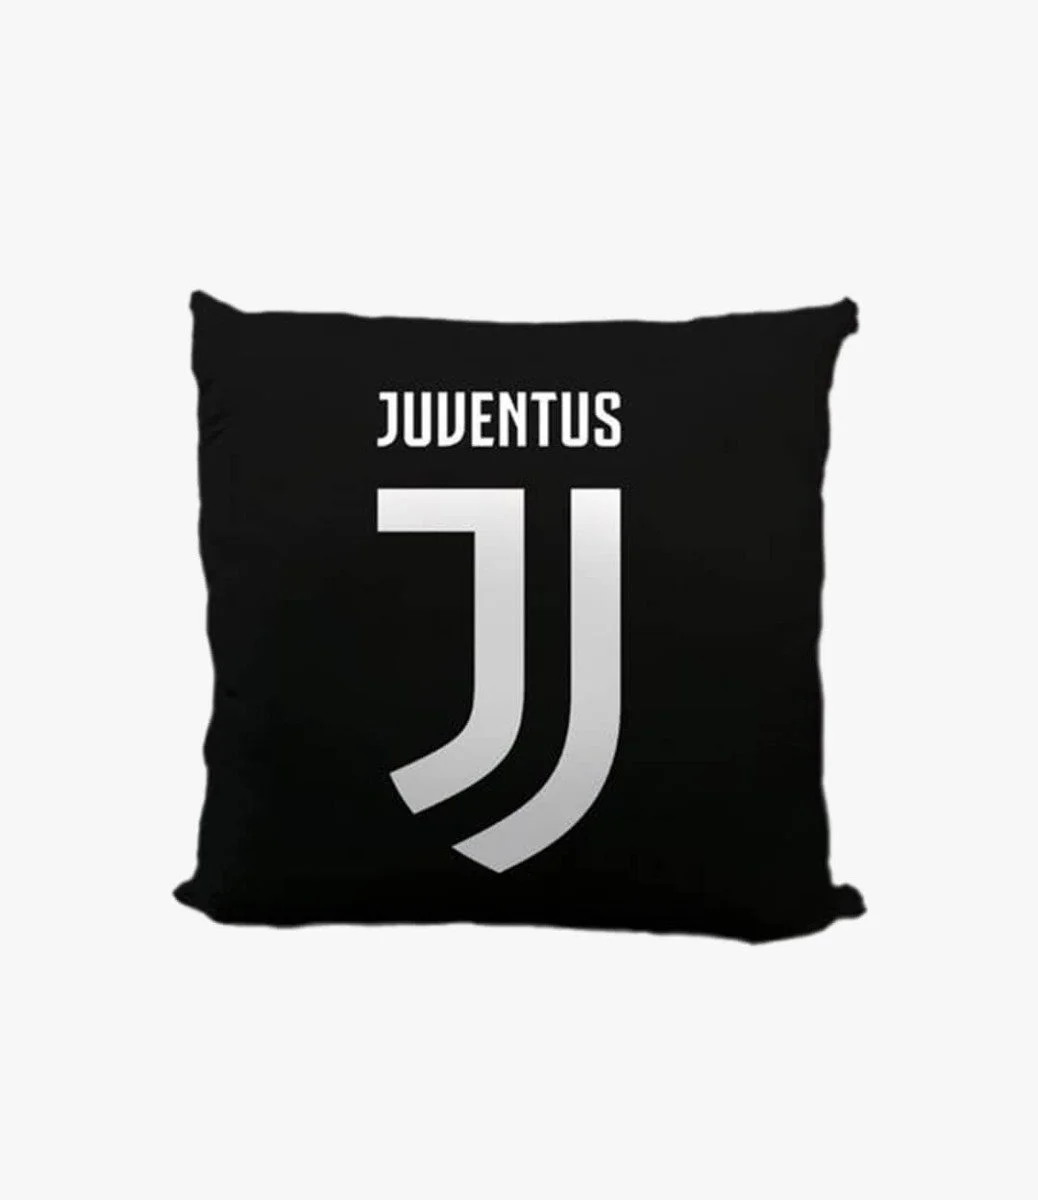 Black Juventus Pillow Case